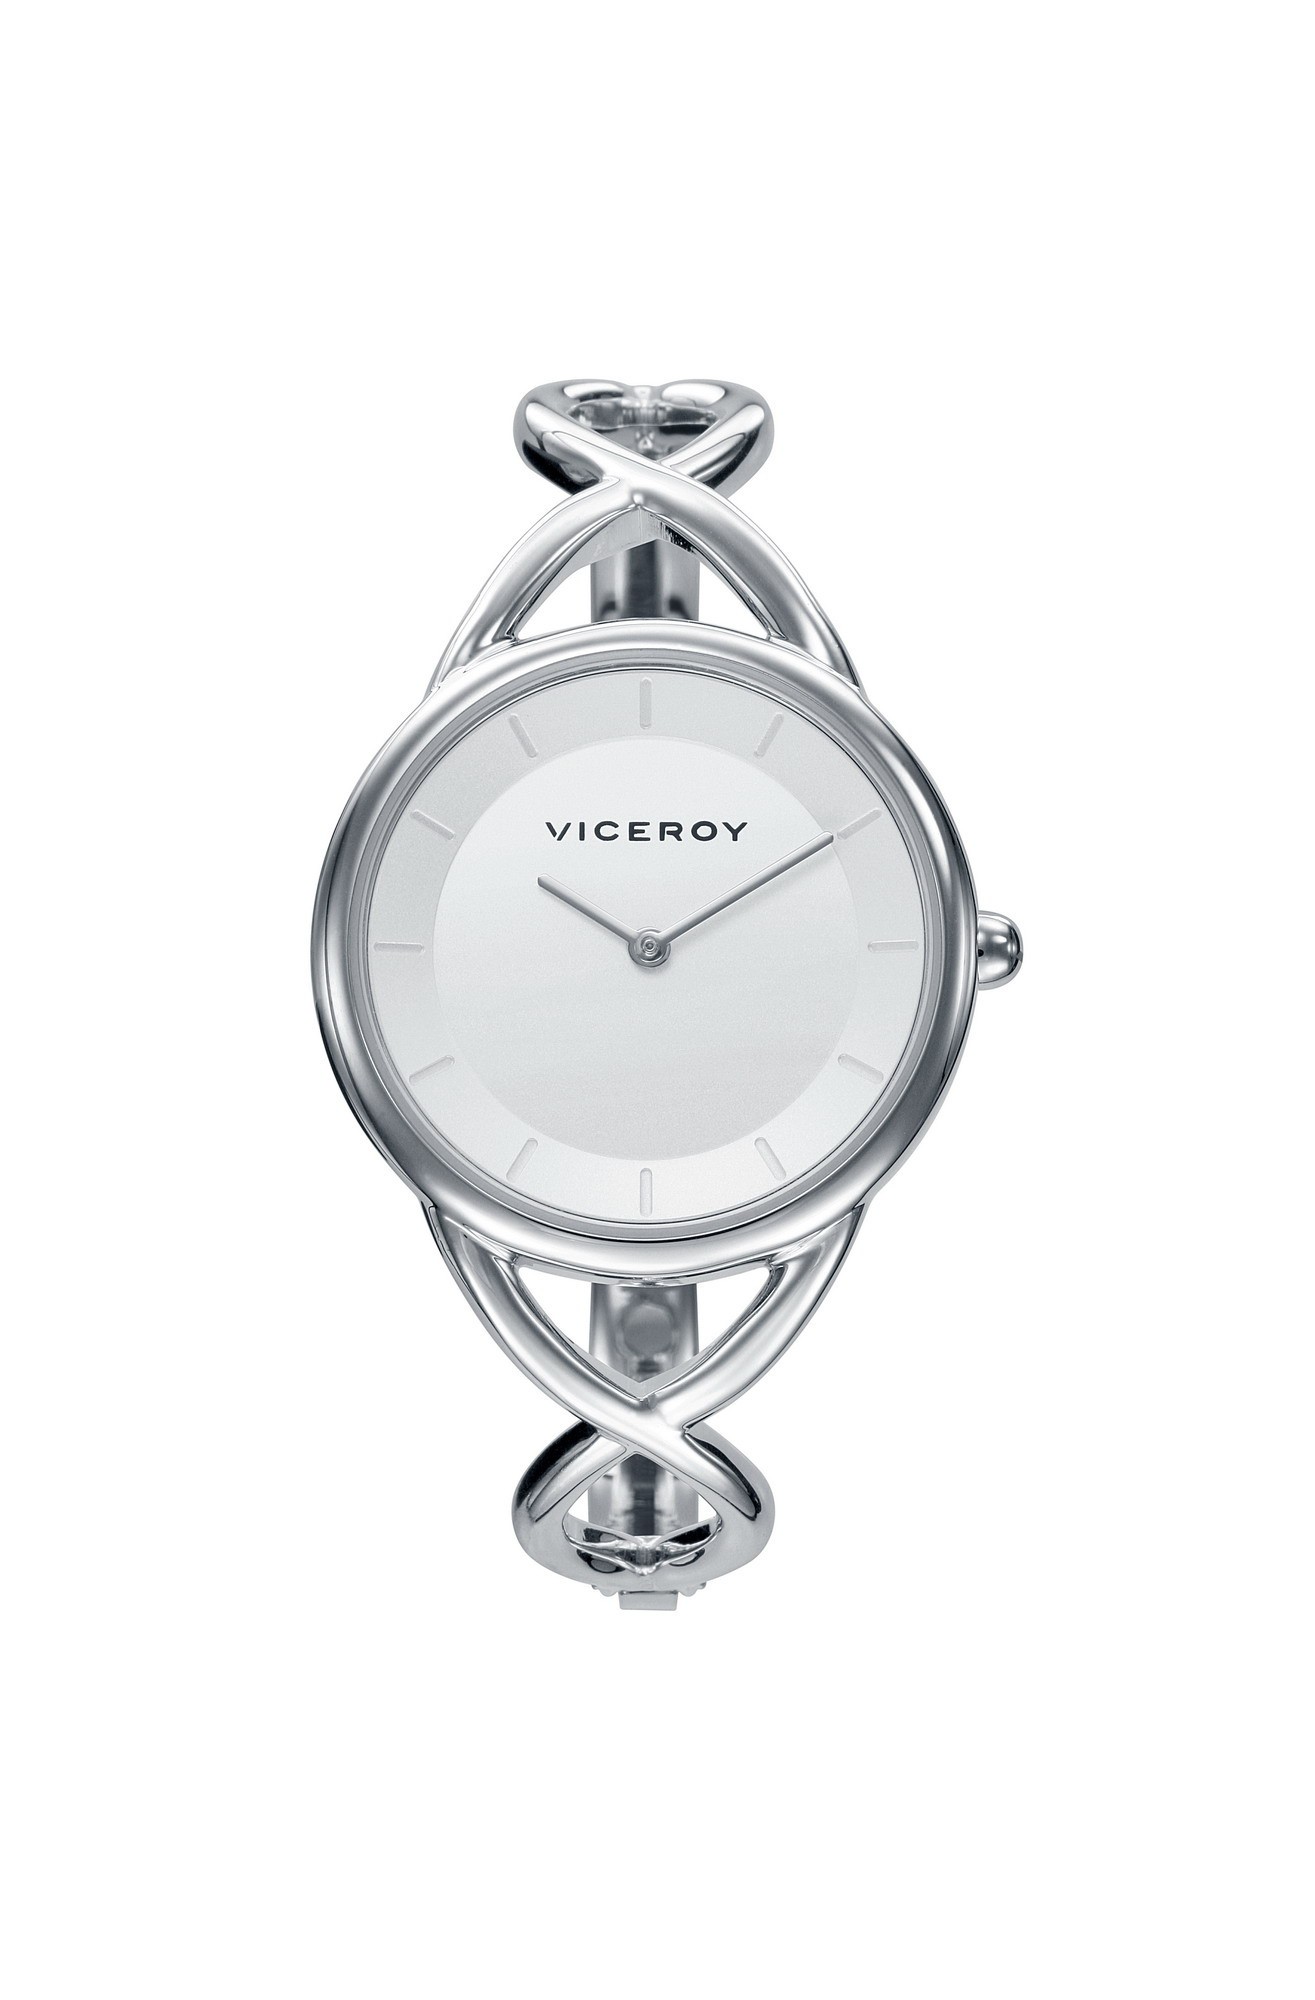 Reloj Viceroy 461062-00 reloj pulsera mujer